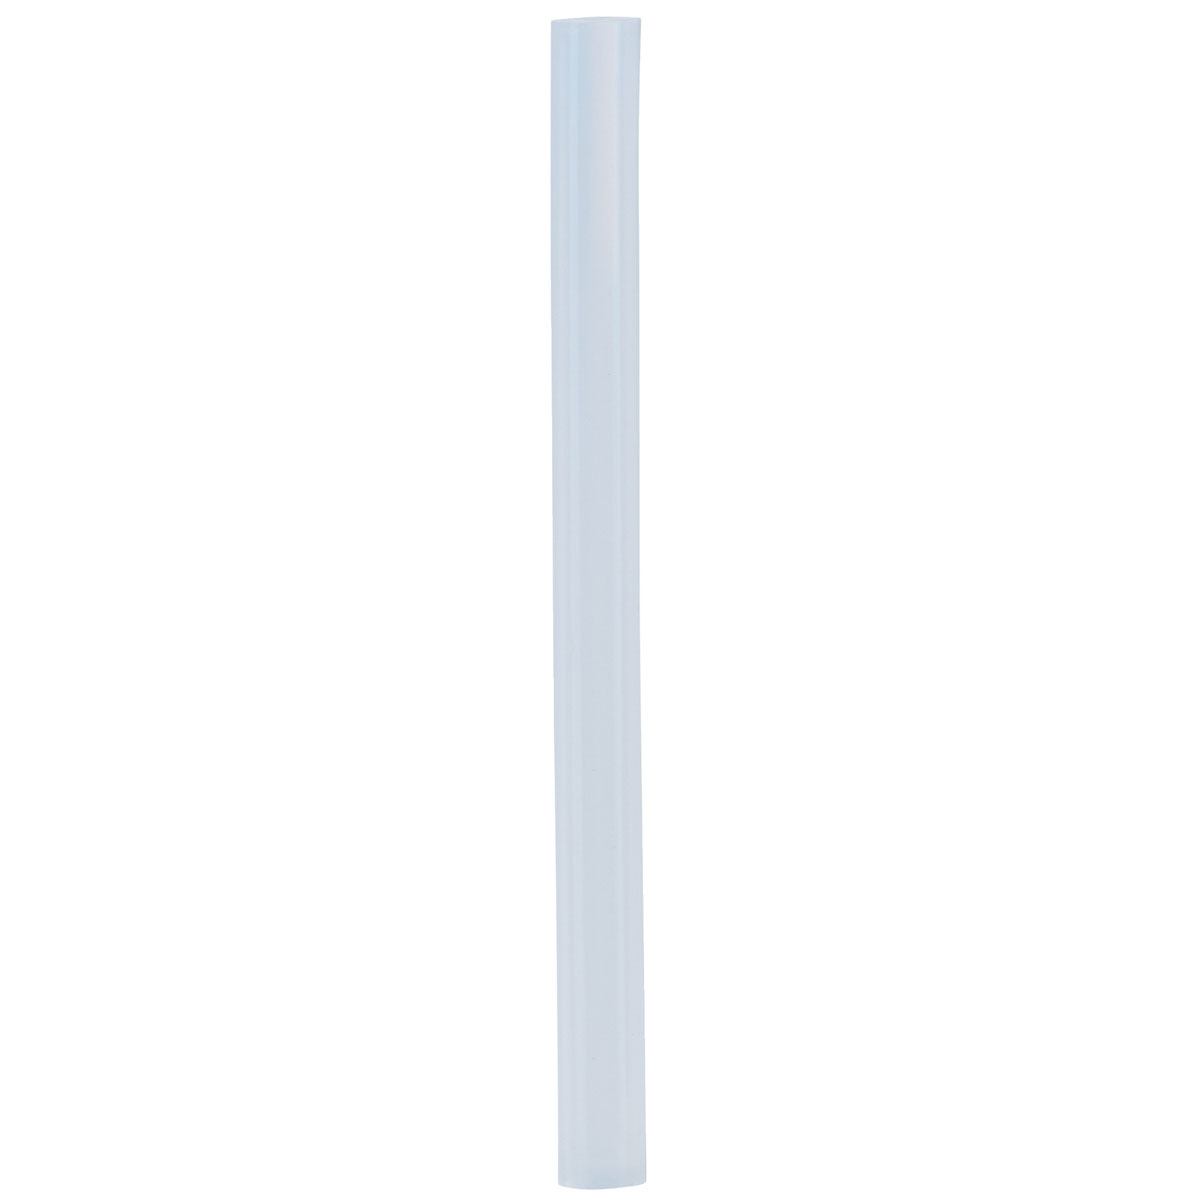 Heißklebesticks, transparent, 0,7x9 cm, 36 Stück